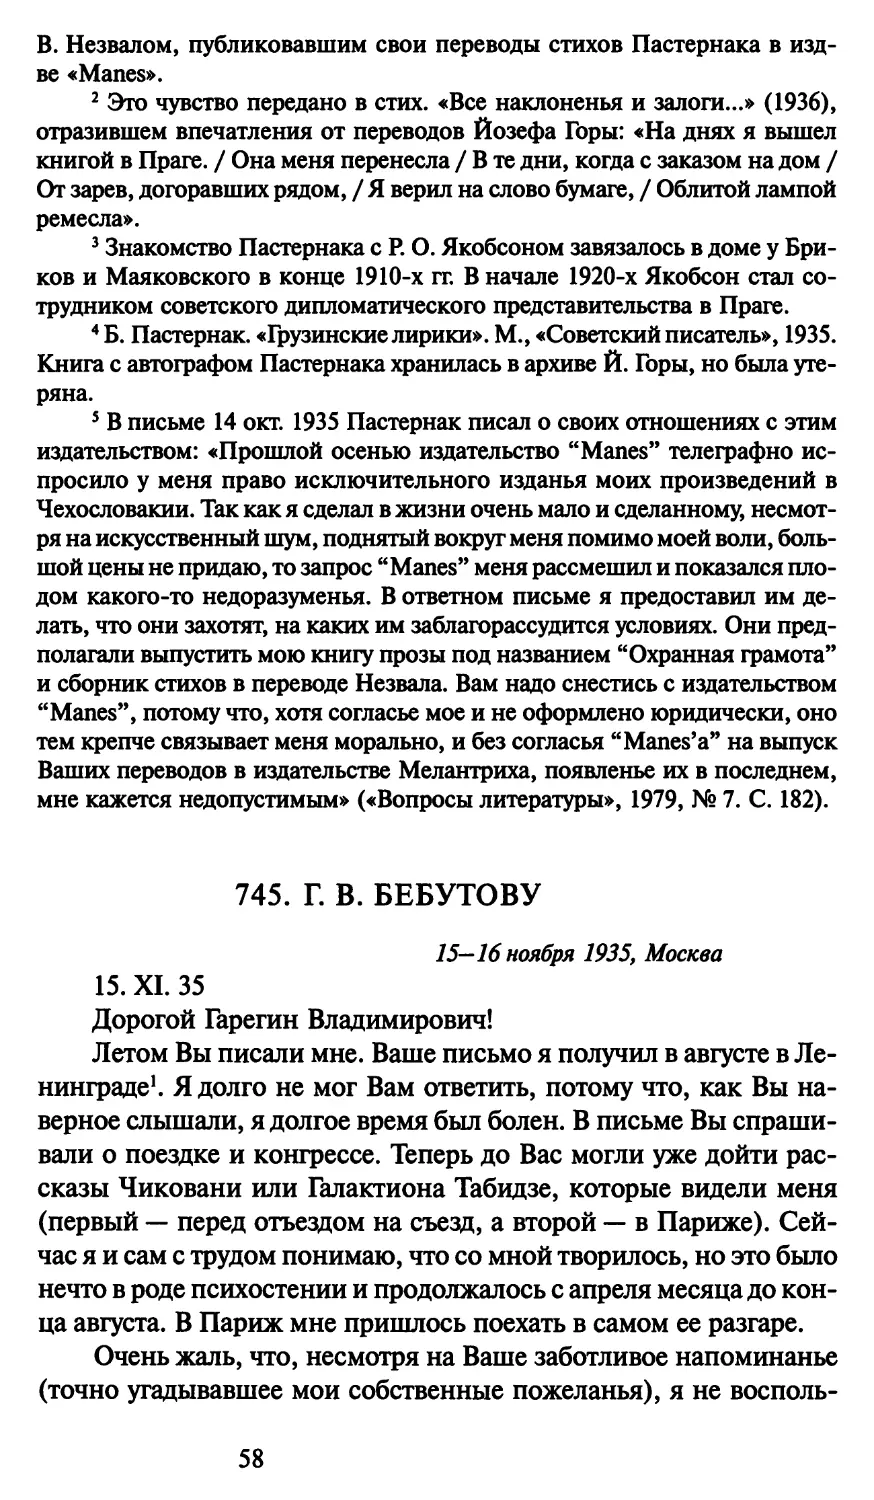 745. Г. В. Бебутову 15-16 ноября 1935